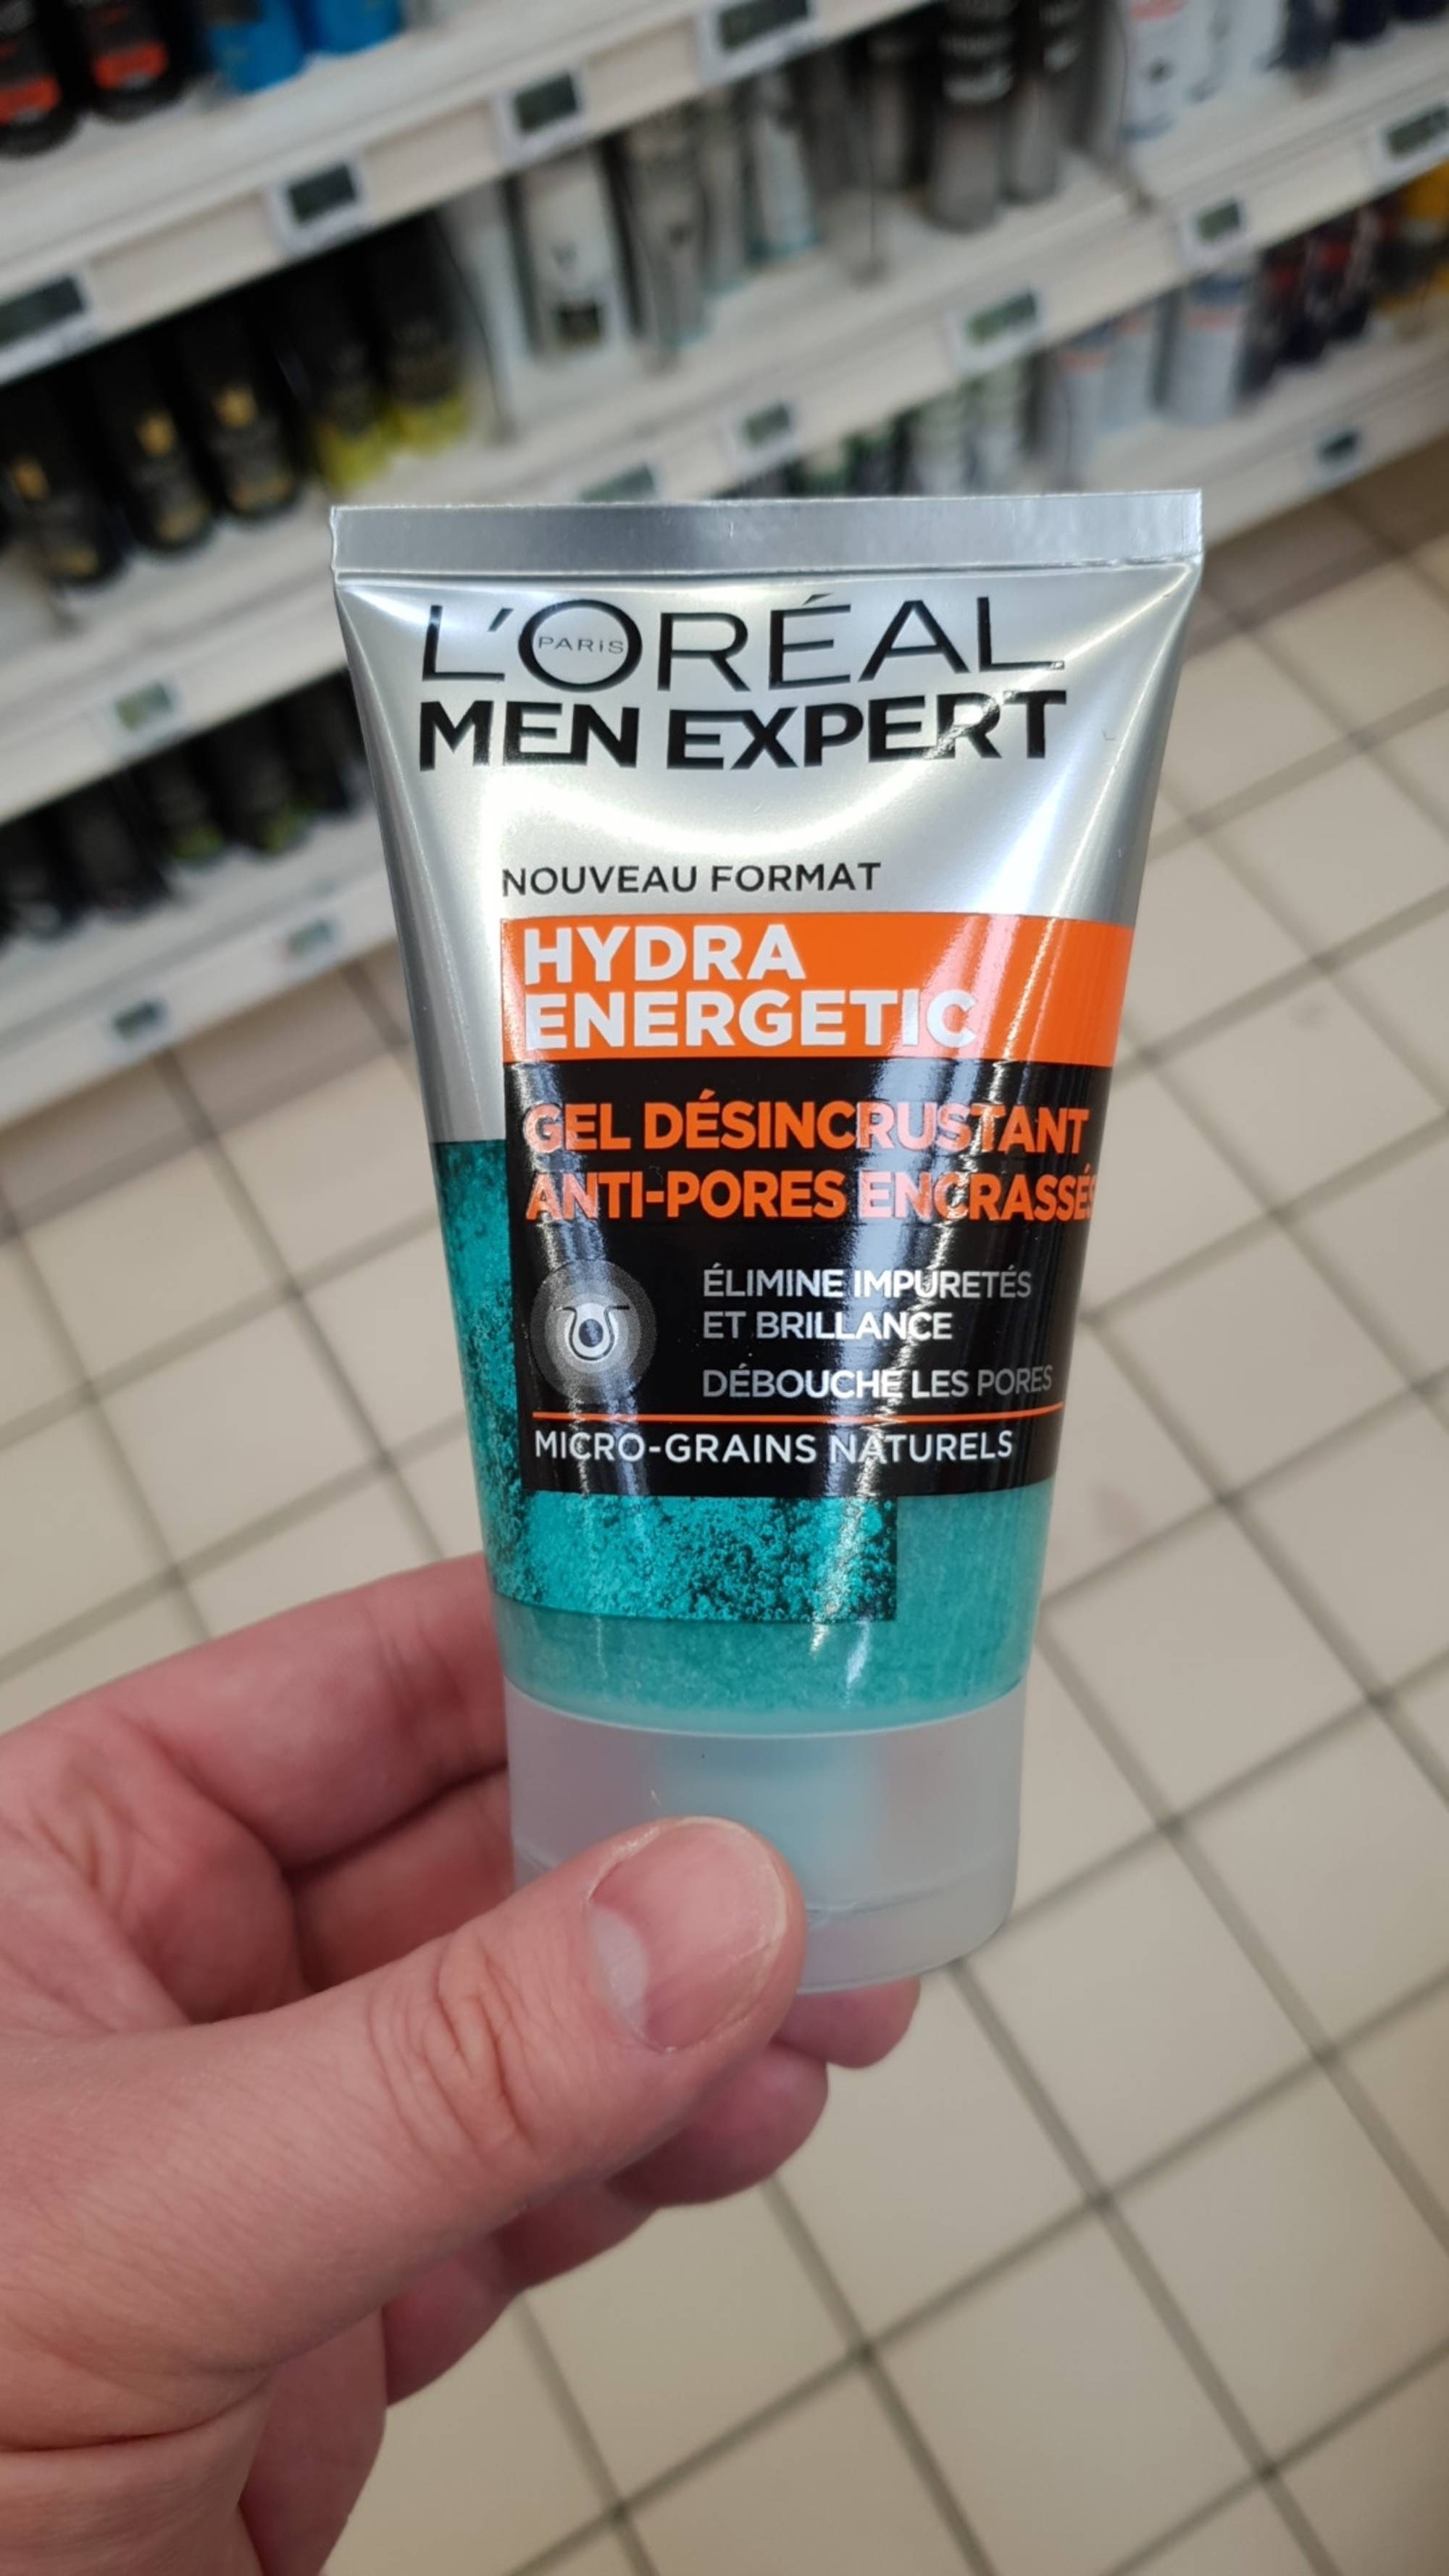 L'ORÉAL - Men expert hydra energetic - Gel désincrustant anti-pores encrassés